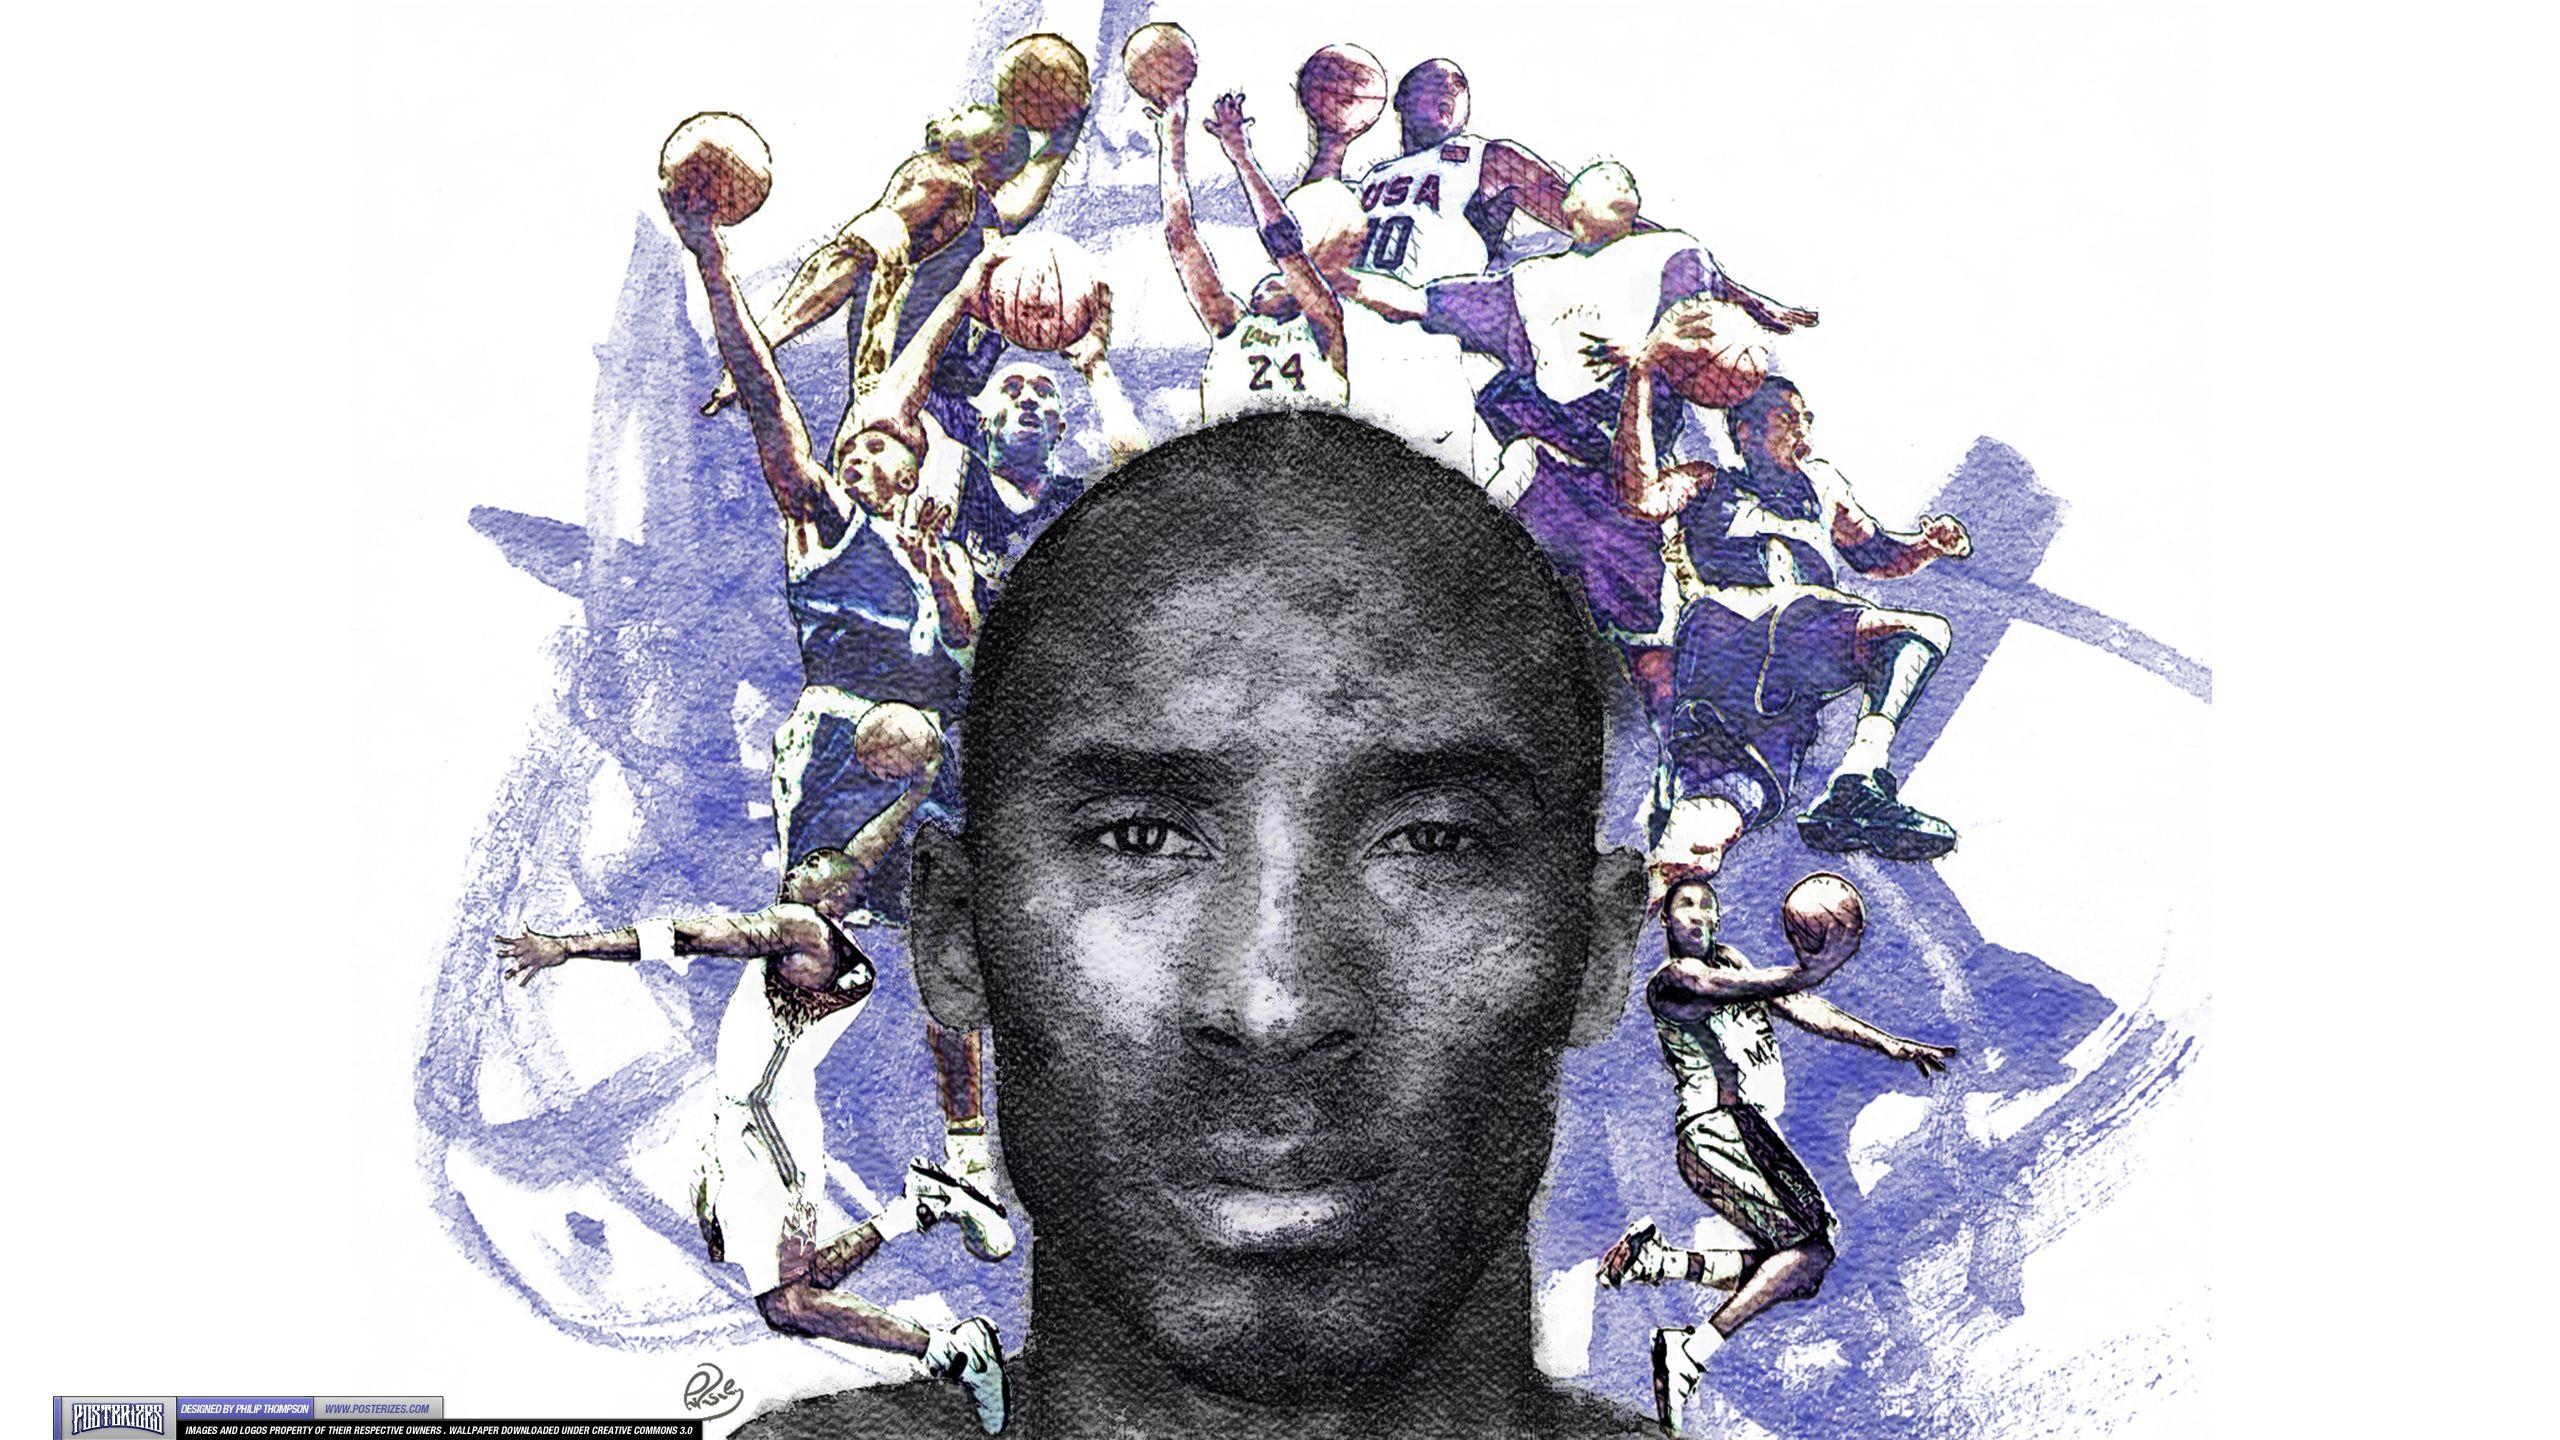 Kobe Bryant - &;Career Painting&; (WALLPAPER)